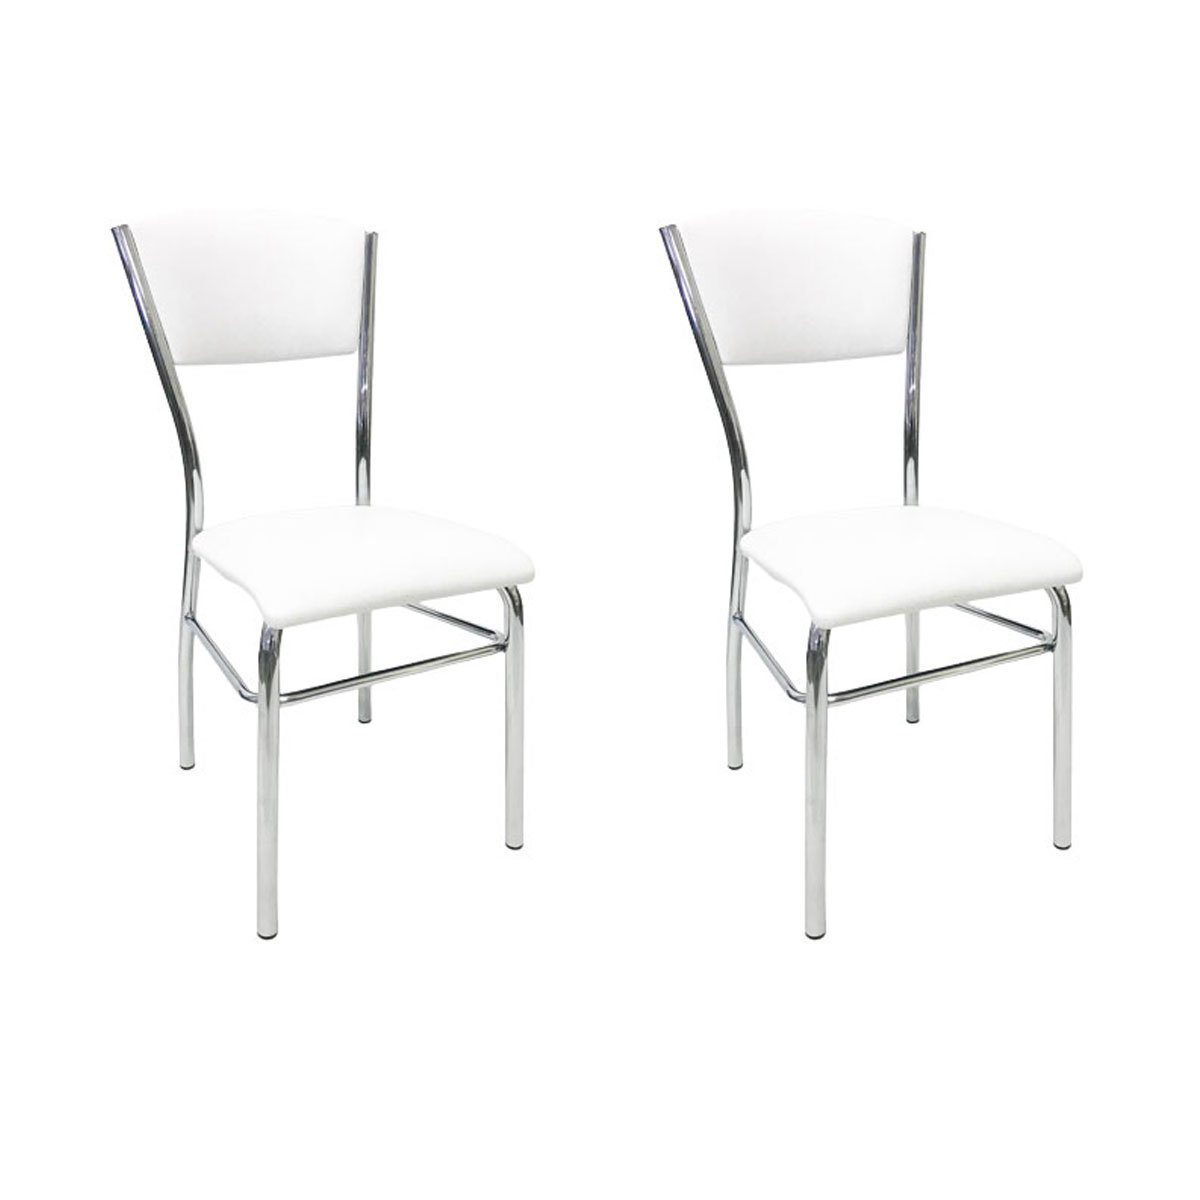 Kit 2 Cadeiras de Cozinha com Reforço Cromada Assento e Encosto Branco - Poltronas do Sul